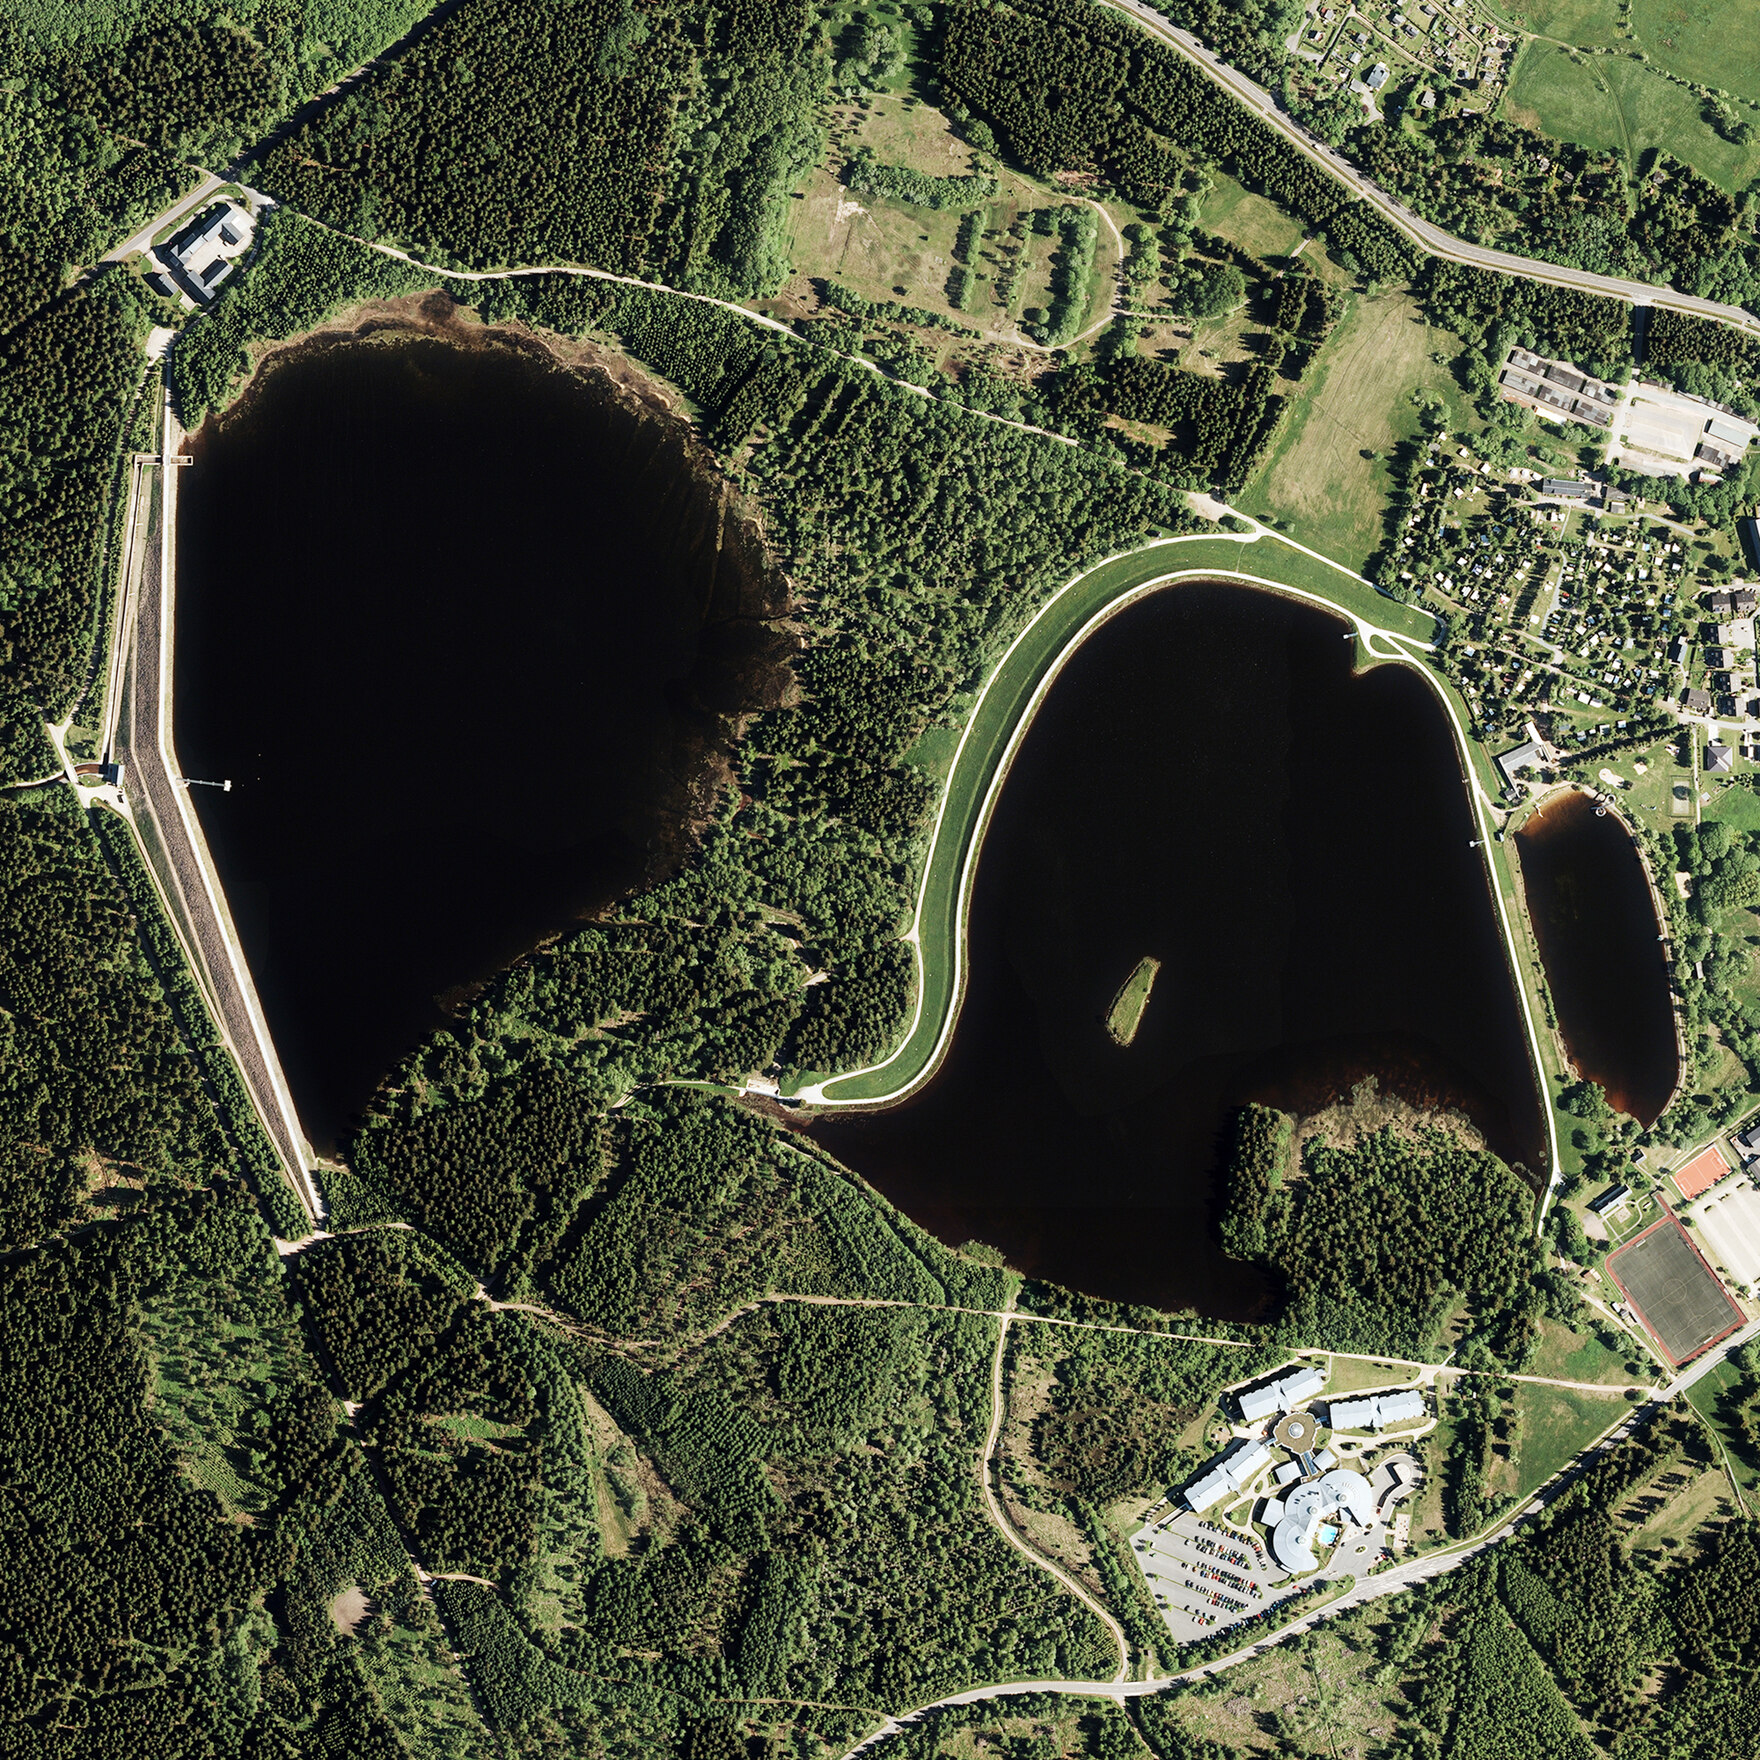 Luftbildaufnahme von Talsperre Altenberg und Talsperre Großer Galgenteich